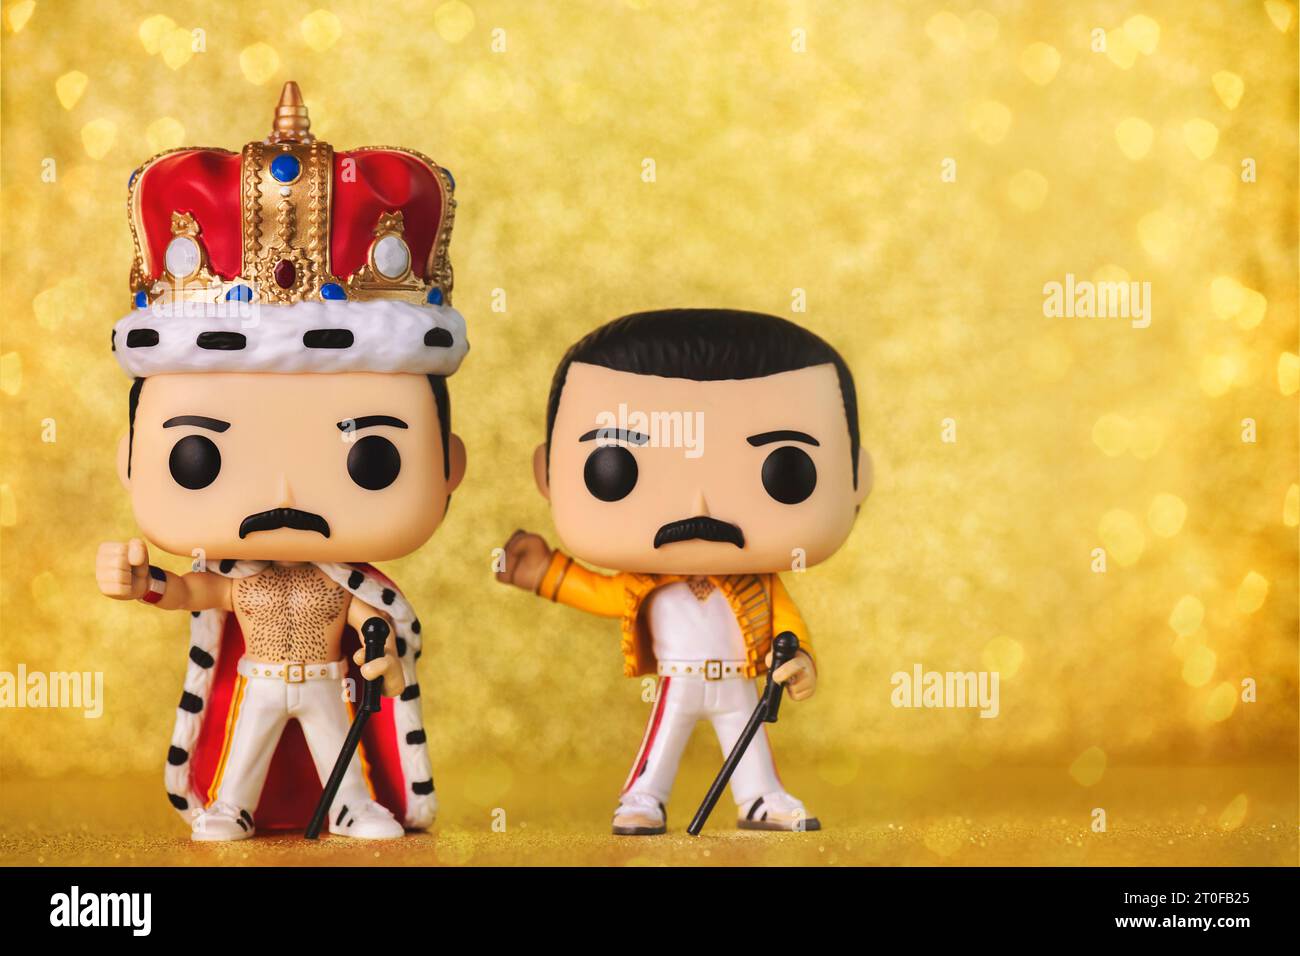 Funko POP vinyle figures de Freddie Mercury chanteur du groupe musical britannique Queen sur fond doré. Editorial illustratif de Funko Pop ac Banque D'Images